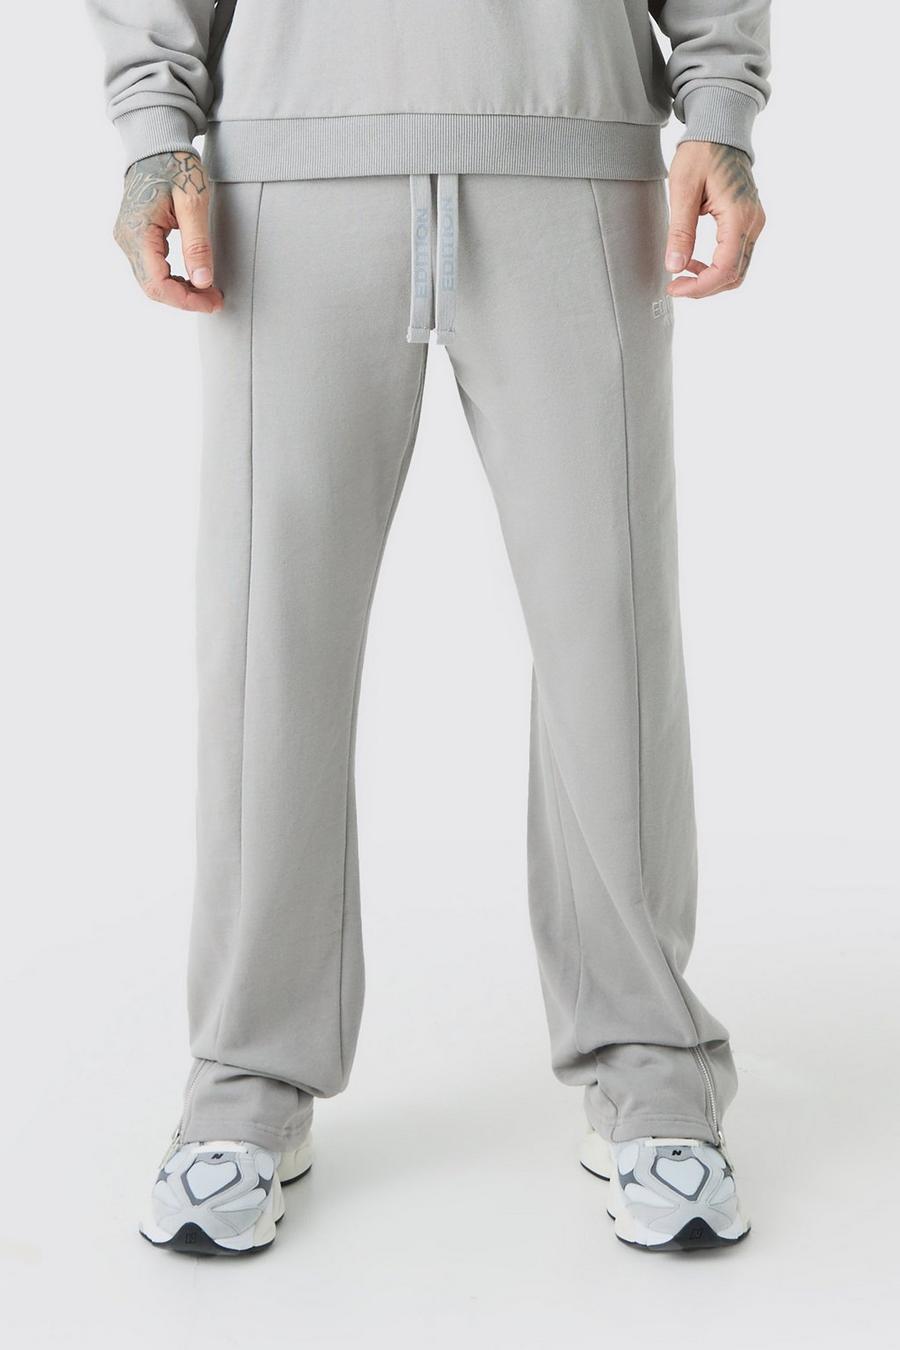 Pantalón deportivo Tall holgado grueso con abertura en el bajo, Grey